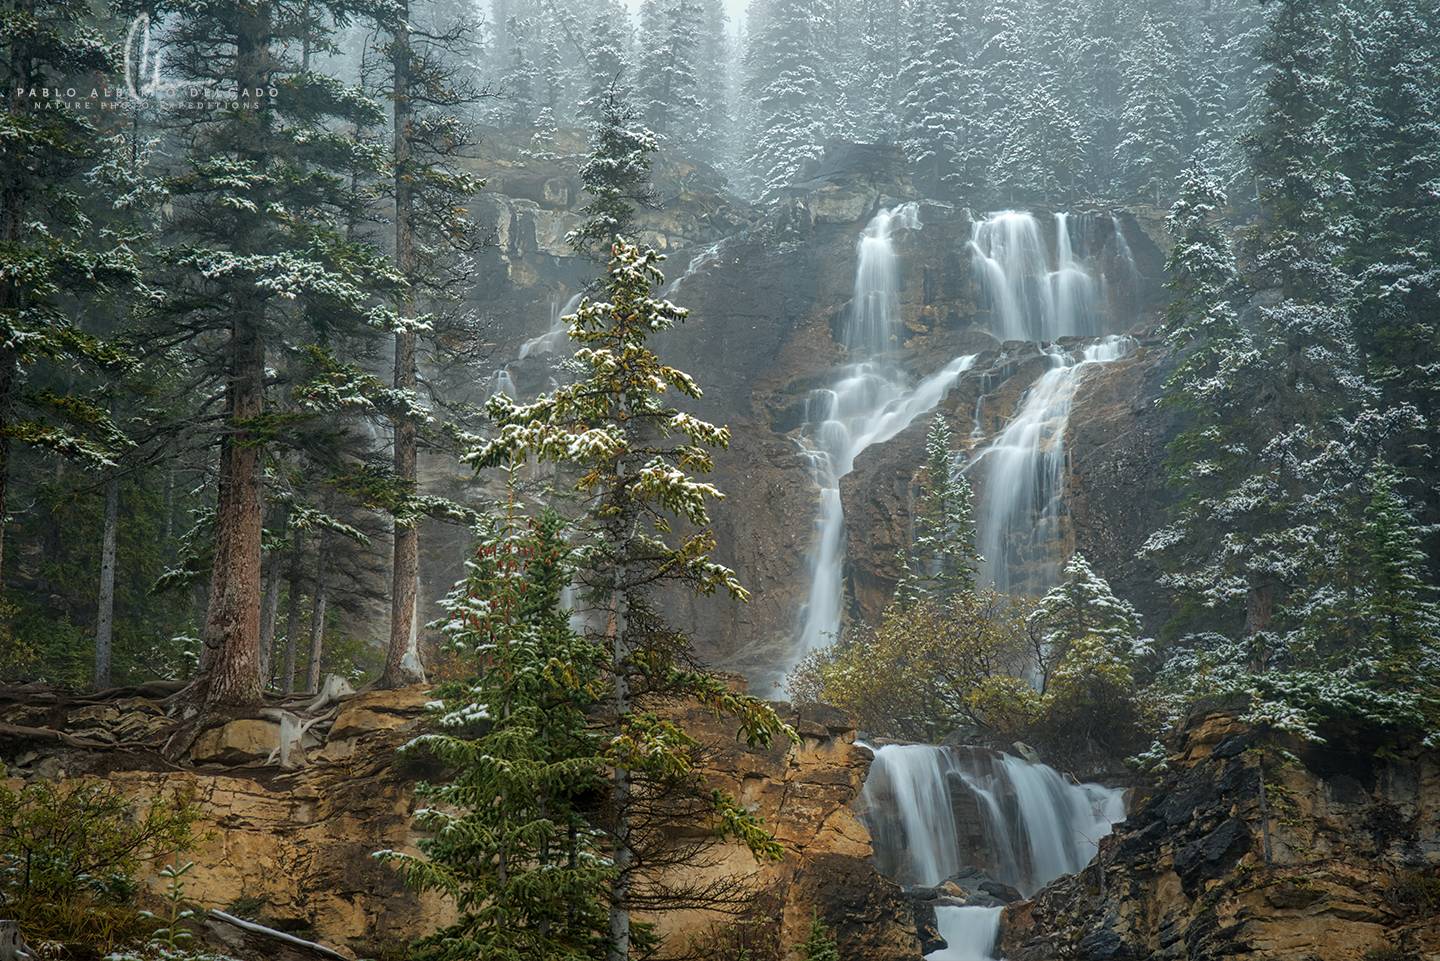 Fotografía de naturaleza en las Montañas Rocosas de Canadá